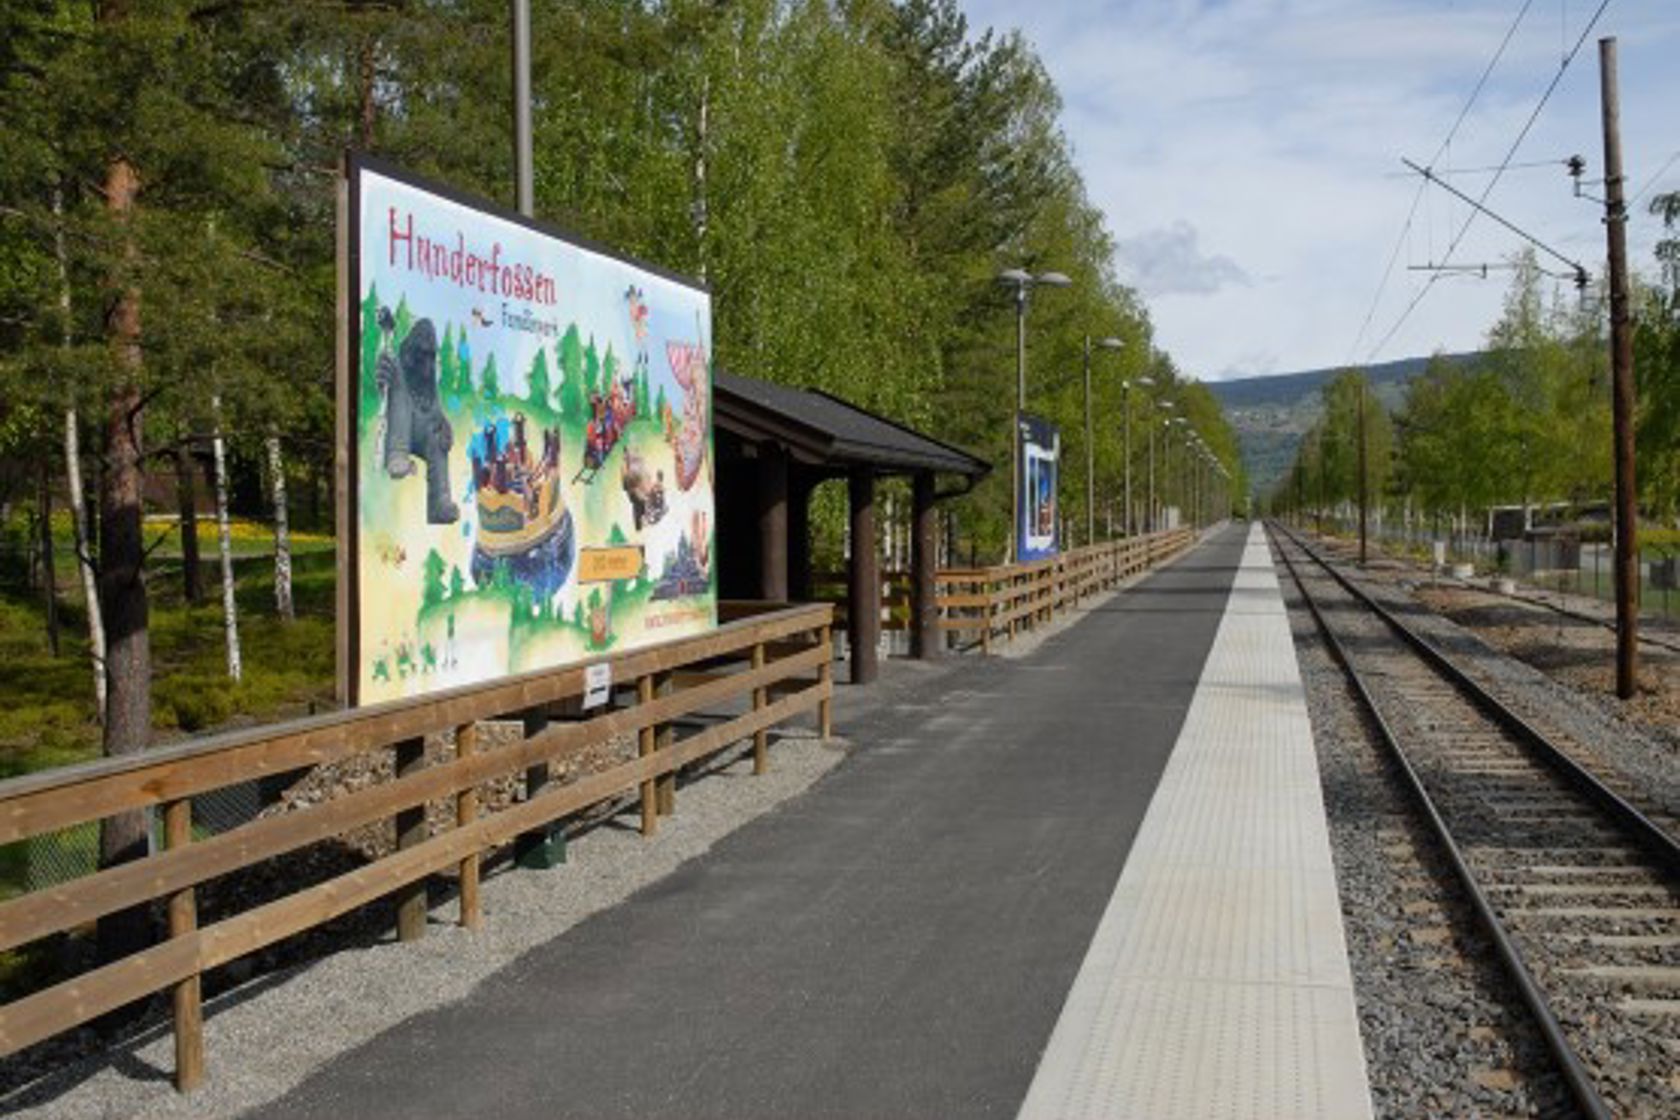 Exterior view of Hunderfossen stop